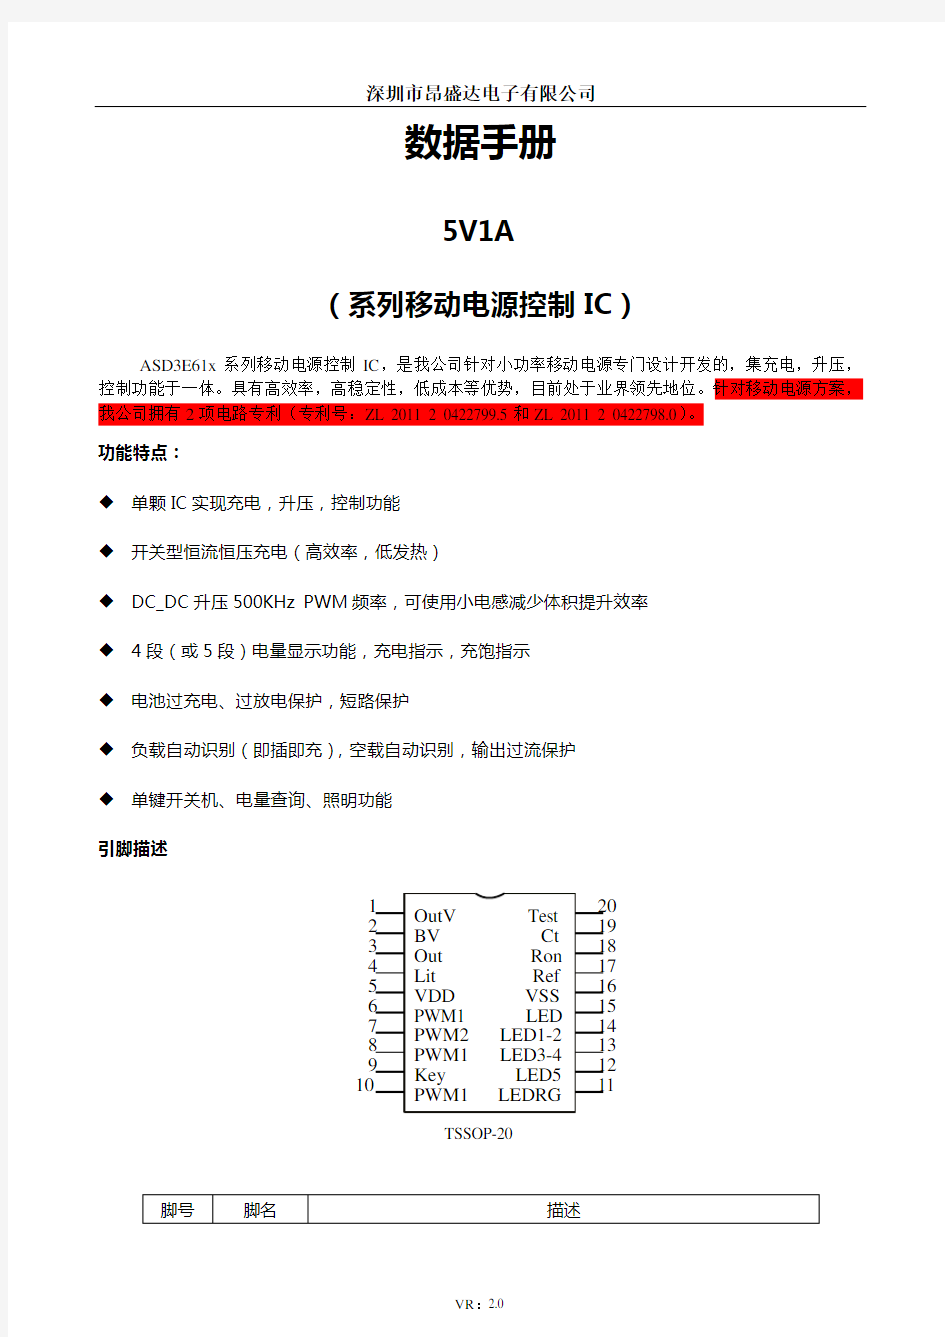 5V1A系列移动电源IC用户手册